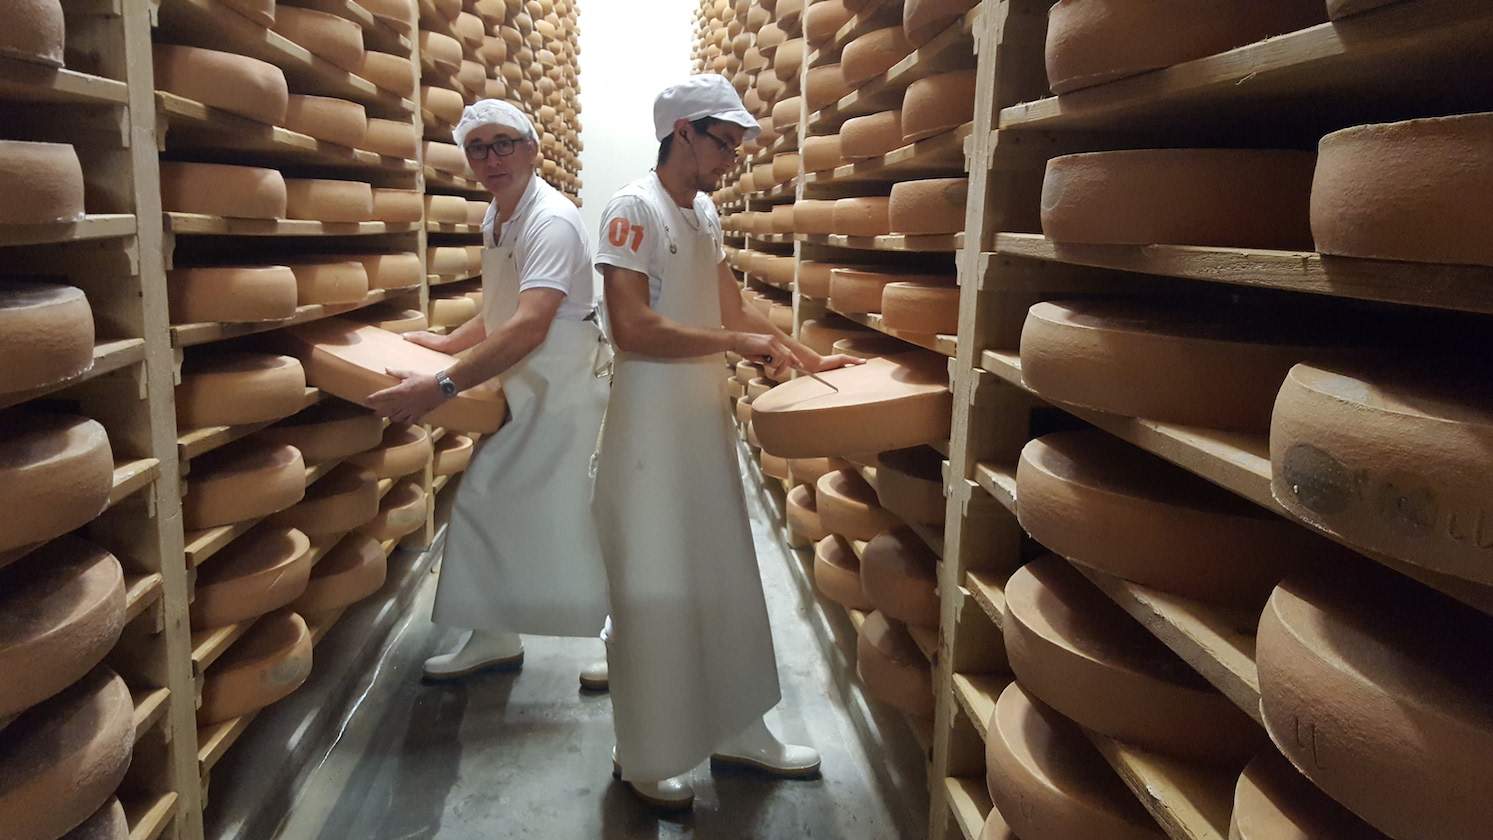 La fromagerie de la Combe du Val va déménager son atelier de transformation